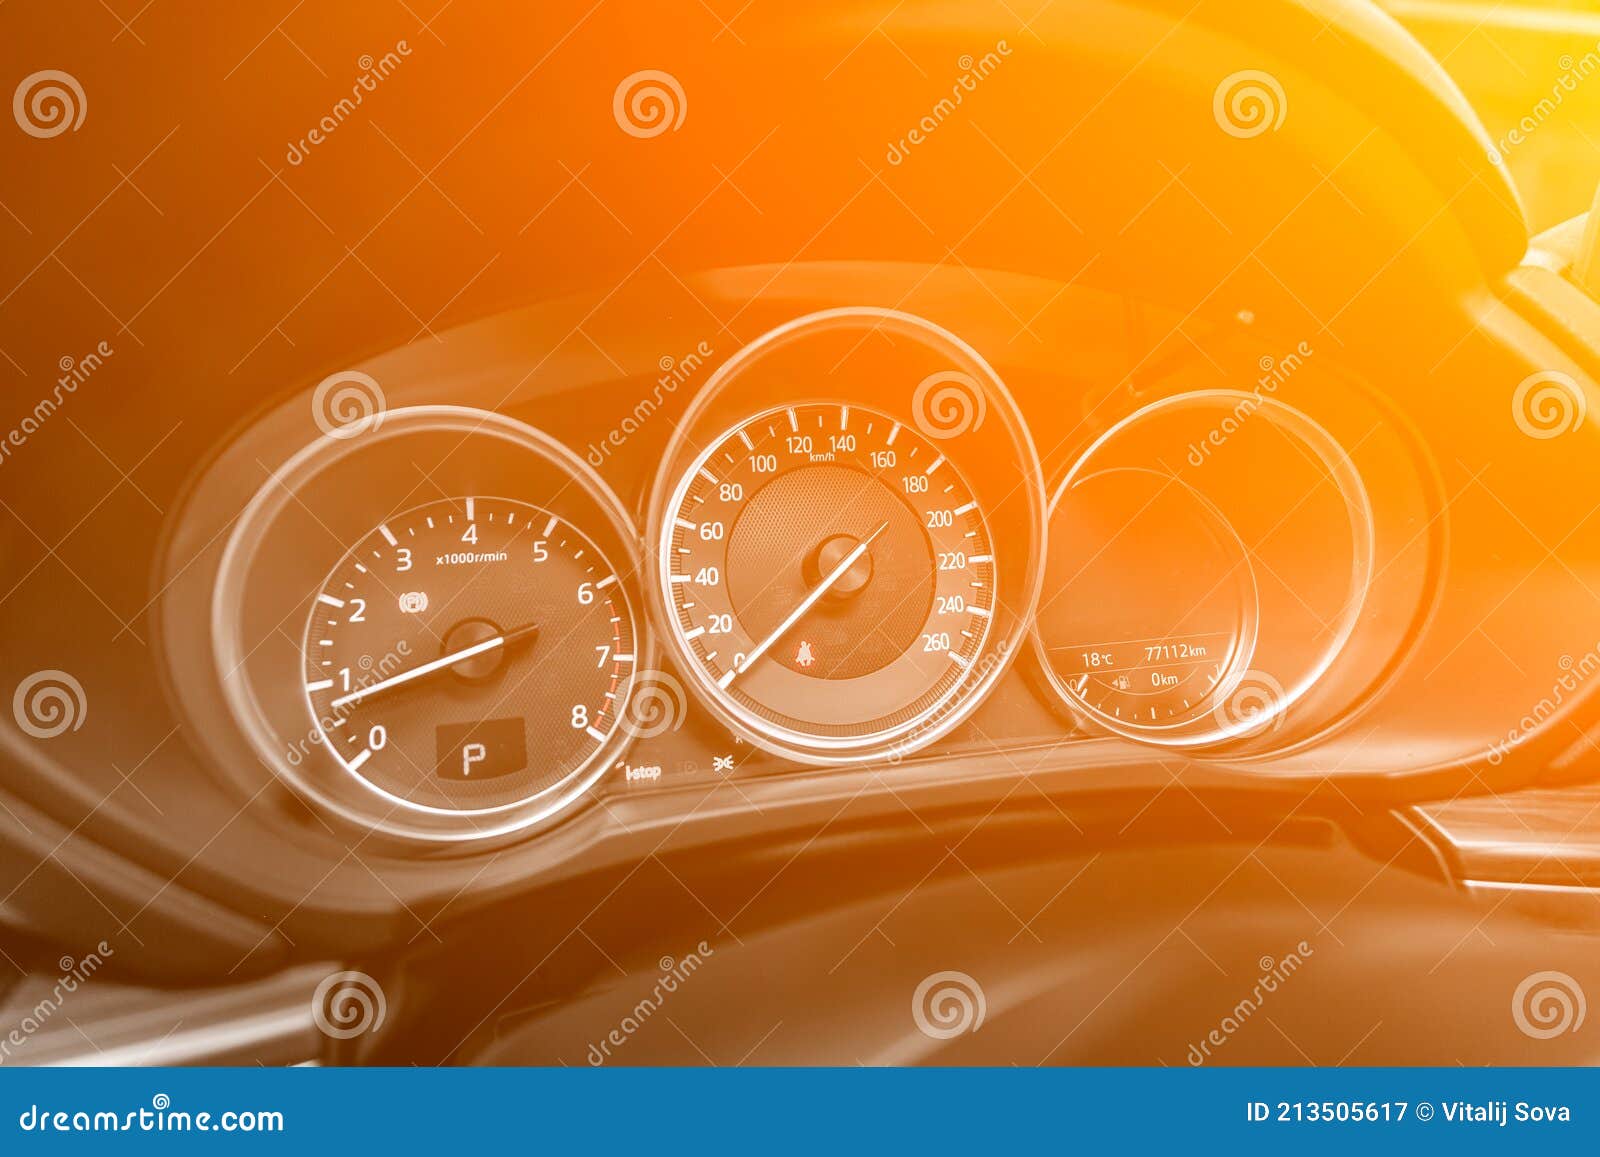 https://thumbs.dreamstime.com/z/compteur-de-vitesse-d-une-voiture-moderne-nouveaux-d%C3%A9tails-int%C3%A9rieurs-tachym%C3%A8tre-et-volant-sous-les-couleurs-jaune-orange-n%C3%A9on-213505617.jpg